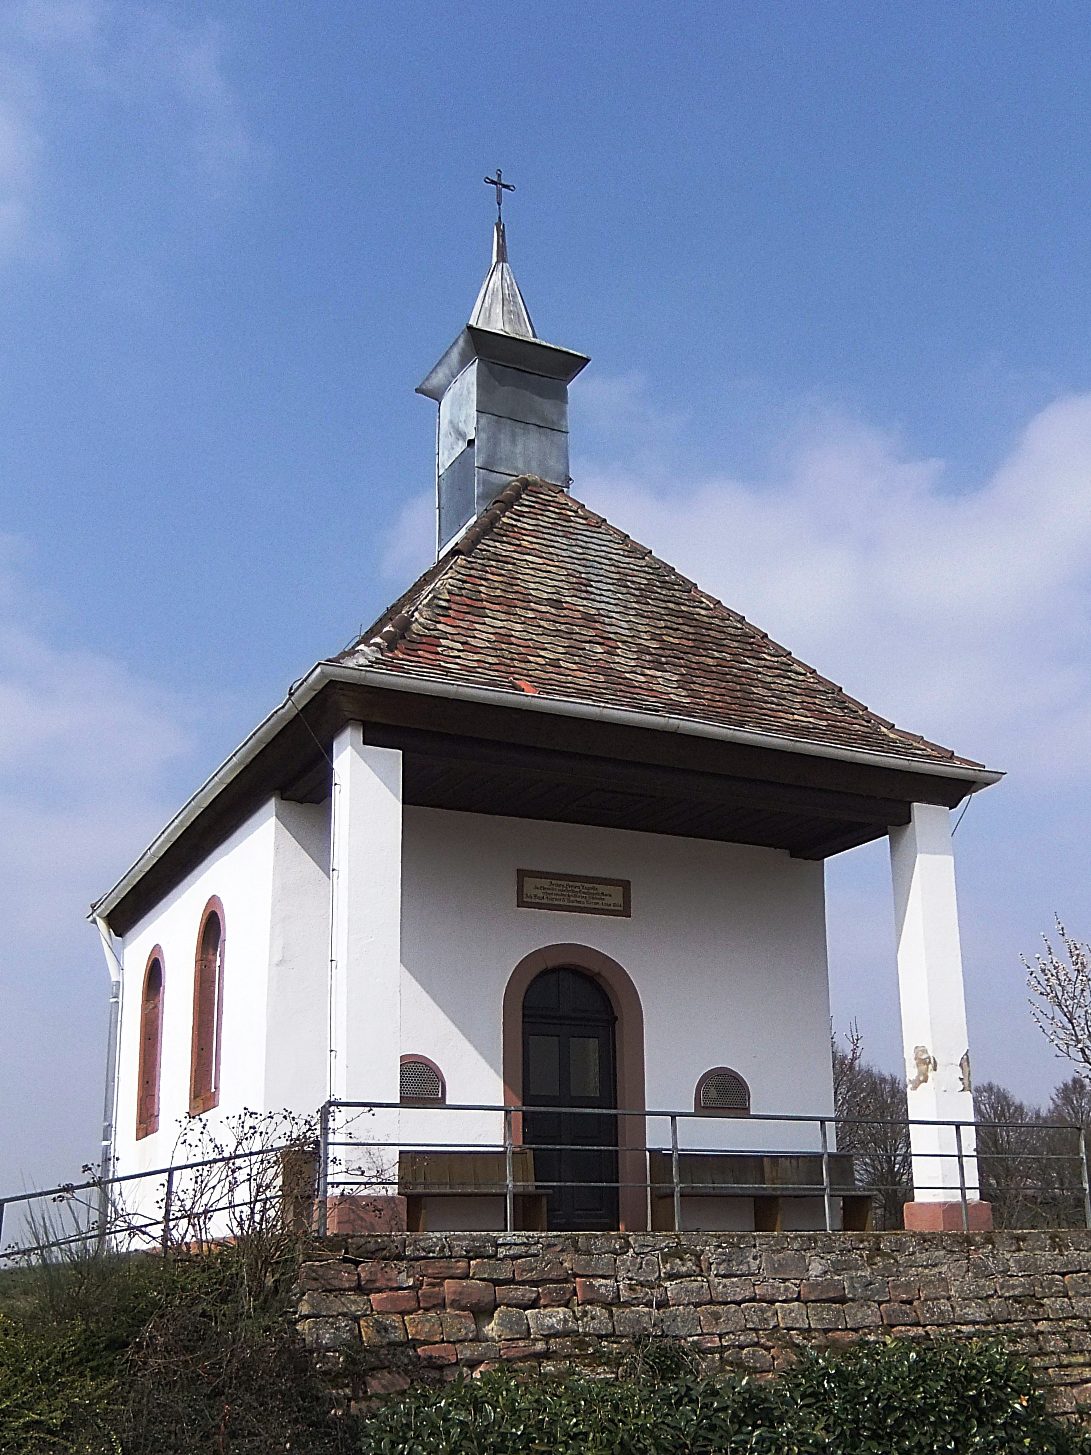 Datei:Armen-Seelen-Kapelle Herxheimweyher.JPG